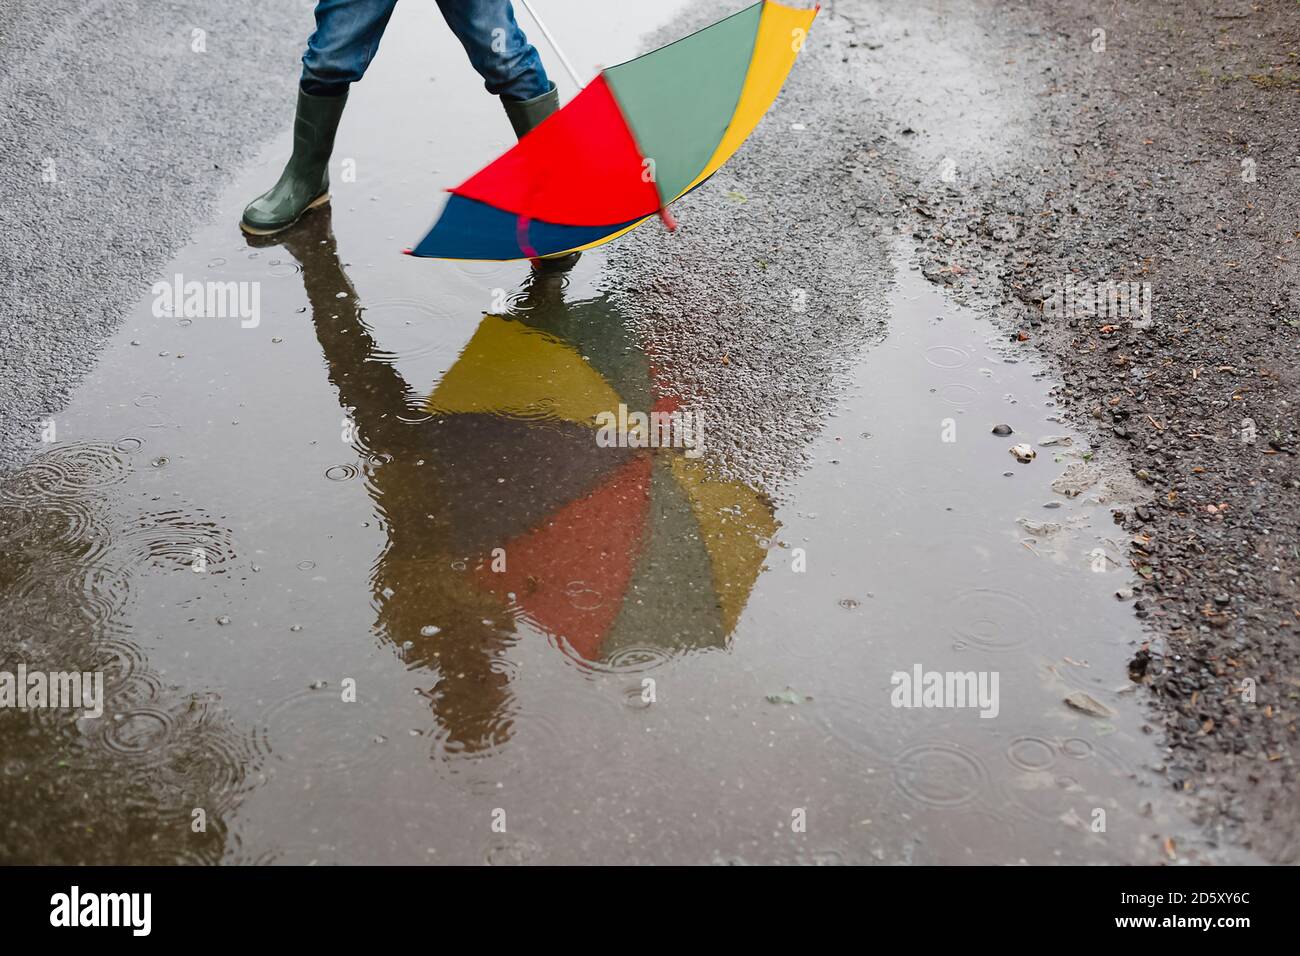 Petit garçon avec parapluie et bottes en caoutchouc debout dans une flaque, vue partielle Banque D'Images